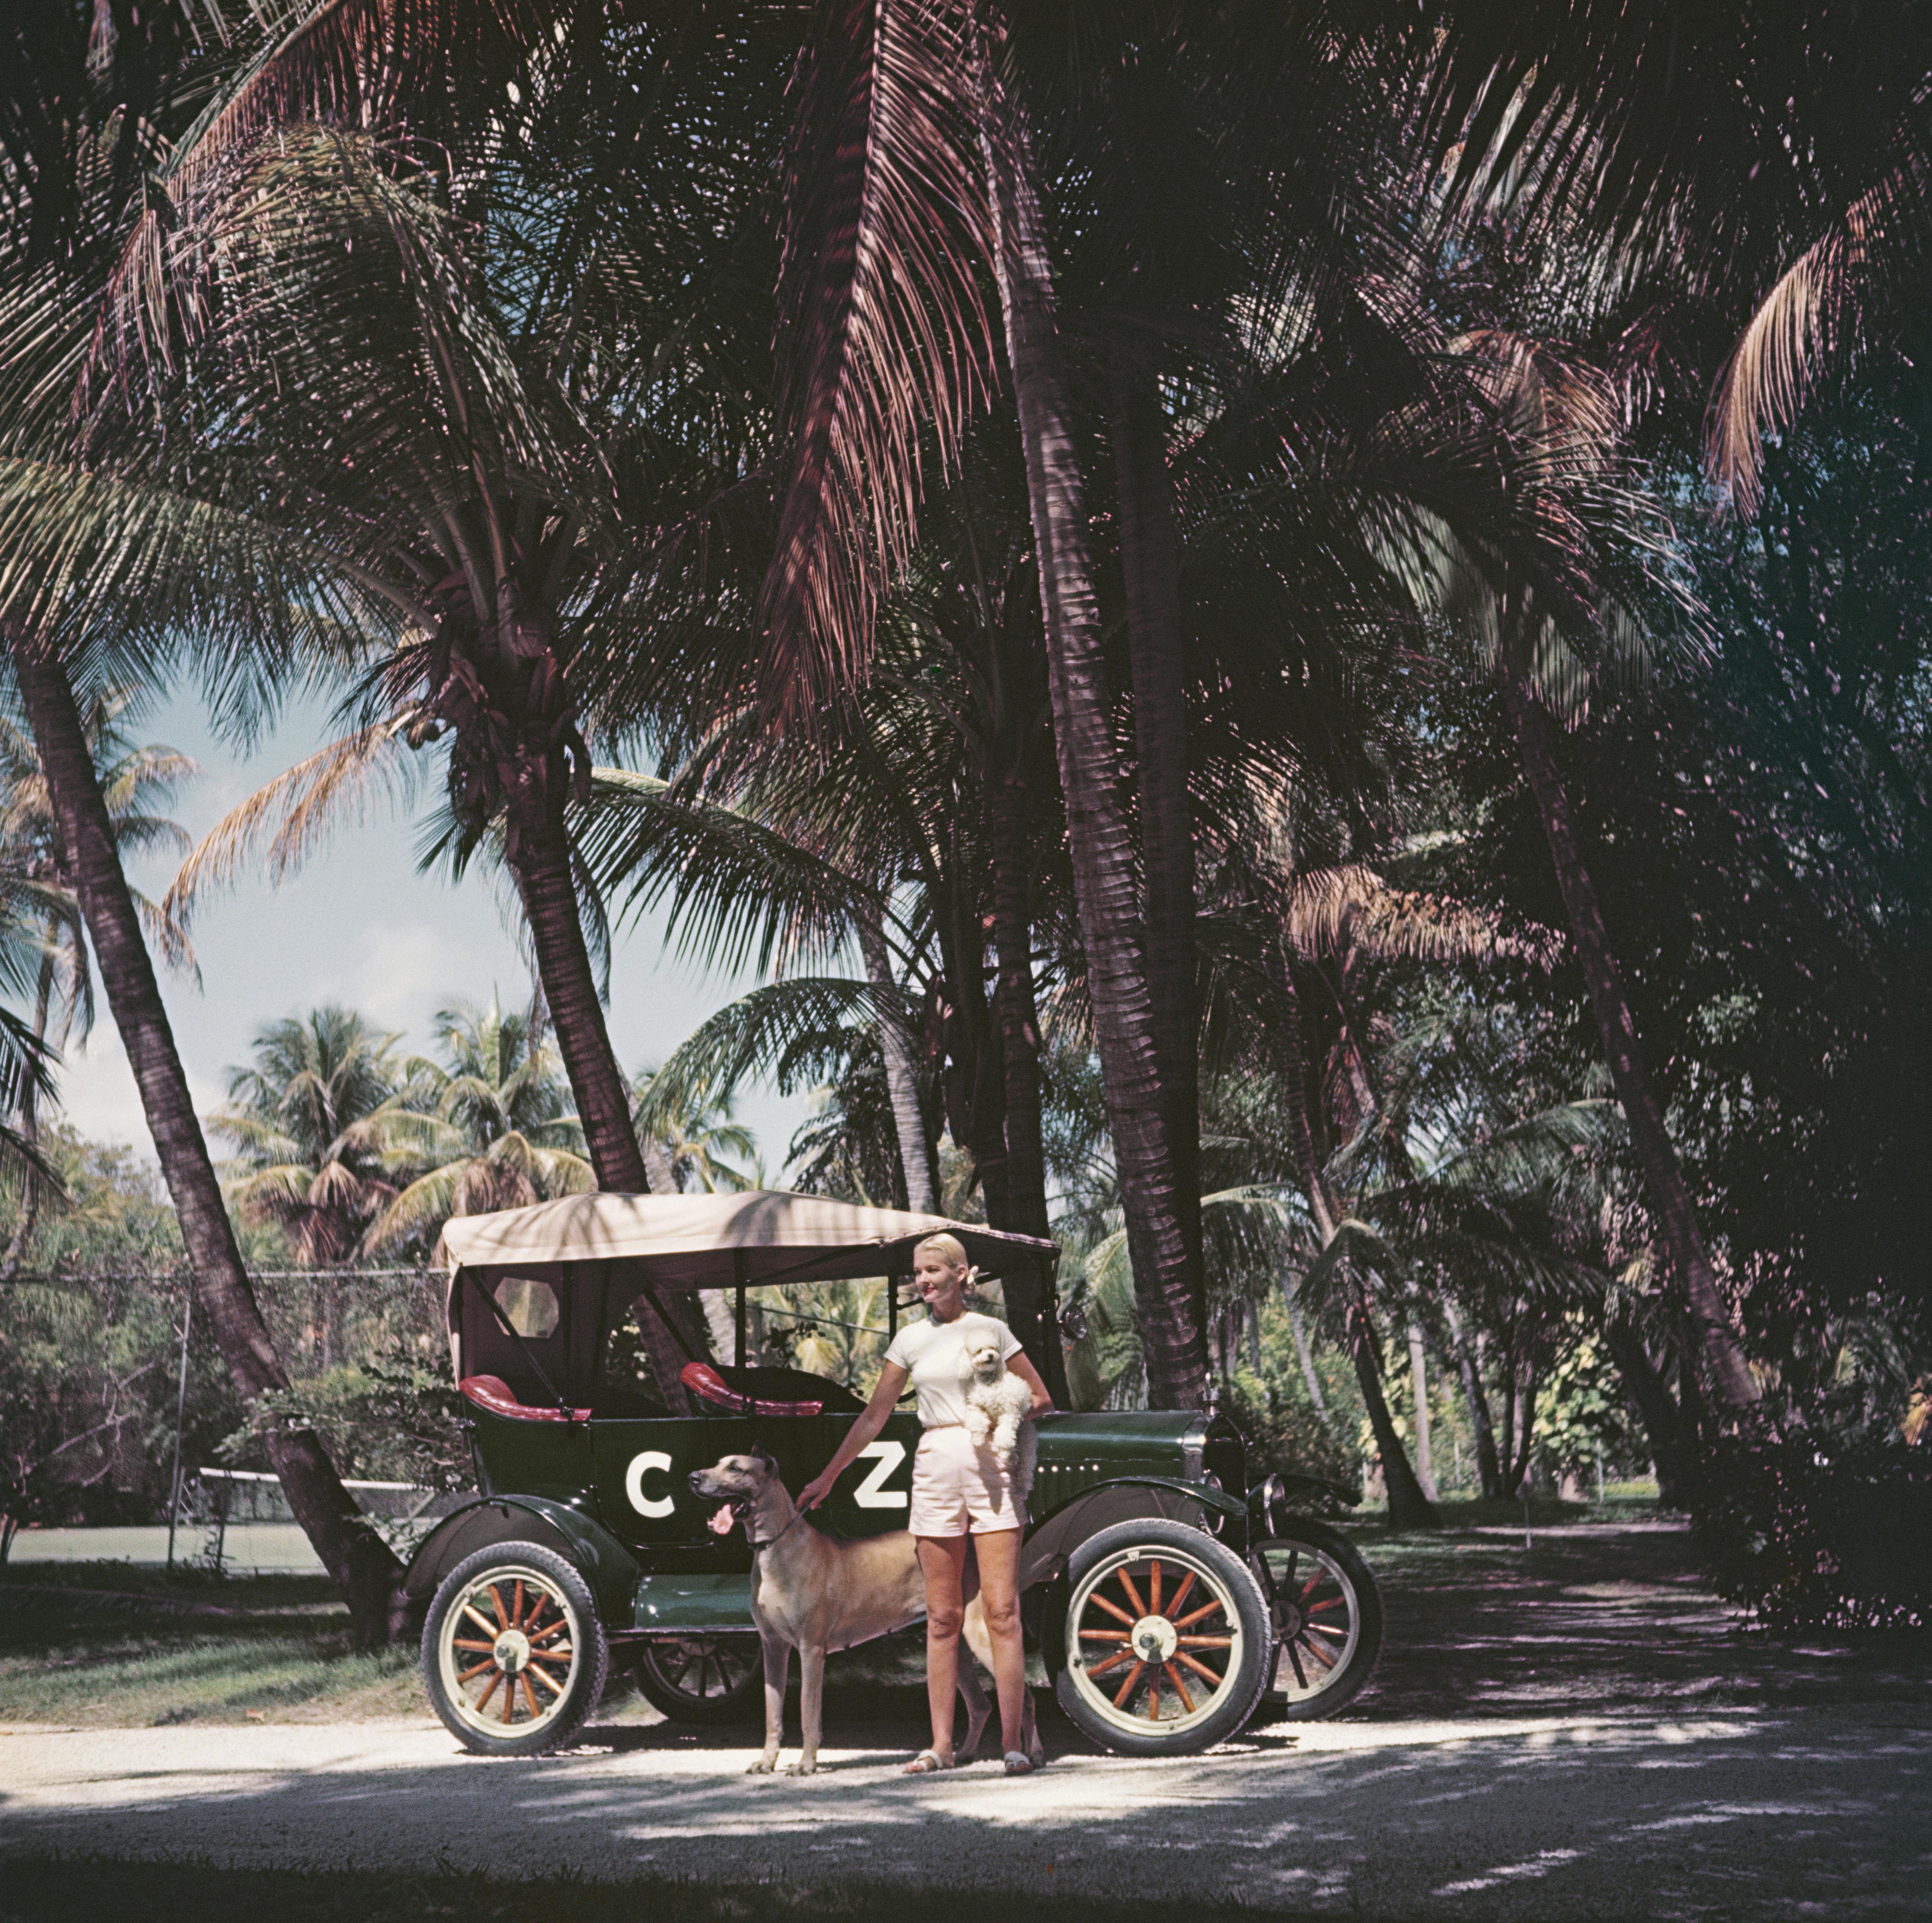 Amerikanische Bühnenschauspielerin, Autorin, Kolumnistin, Reiterin, Modedesignerin und Gesellschaftsdame C. Z. Guest (auch bekannt als Mrs. Winston F. C. Guest, 1920 - 2003) mit ihrem personalisierten Ford Model T Tourer, in Begleitung eines Pudels